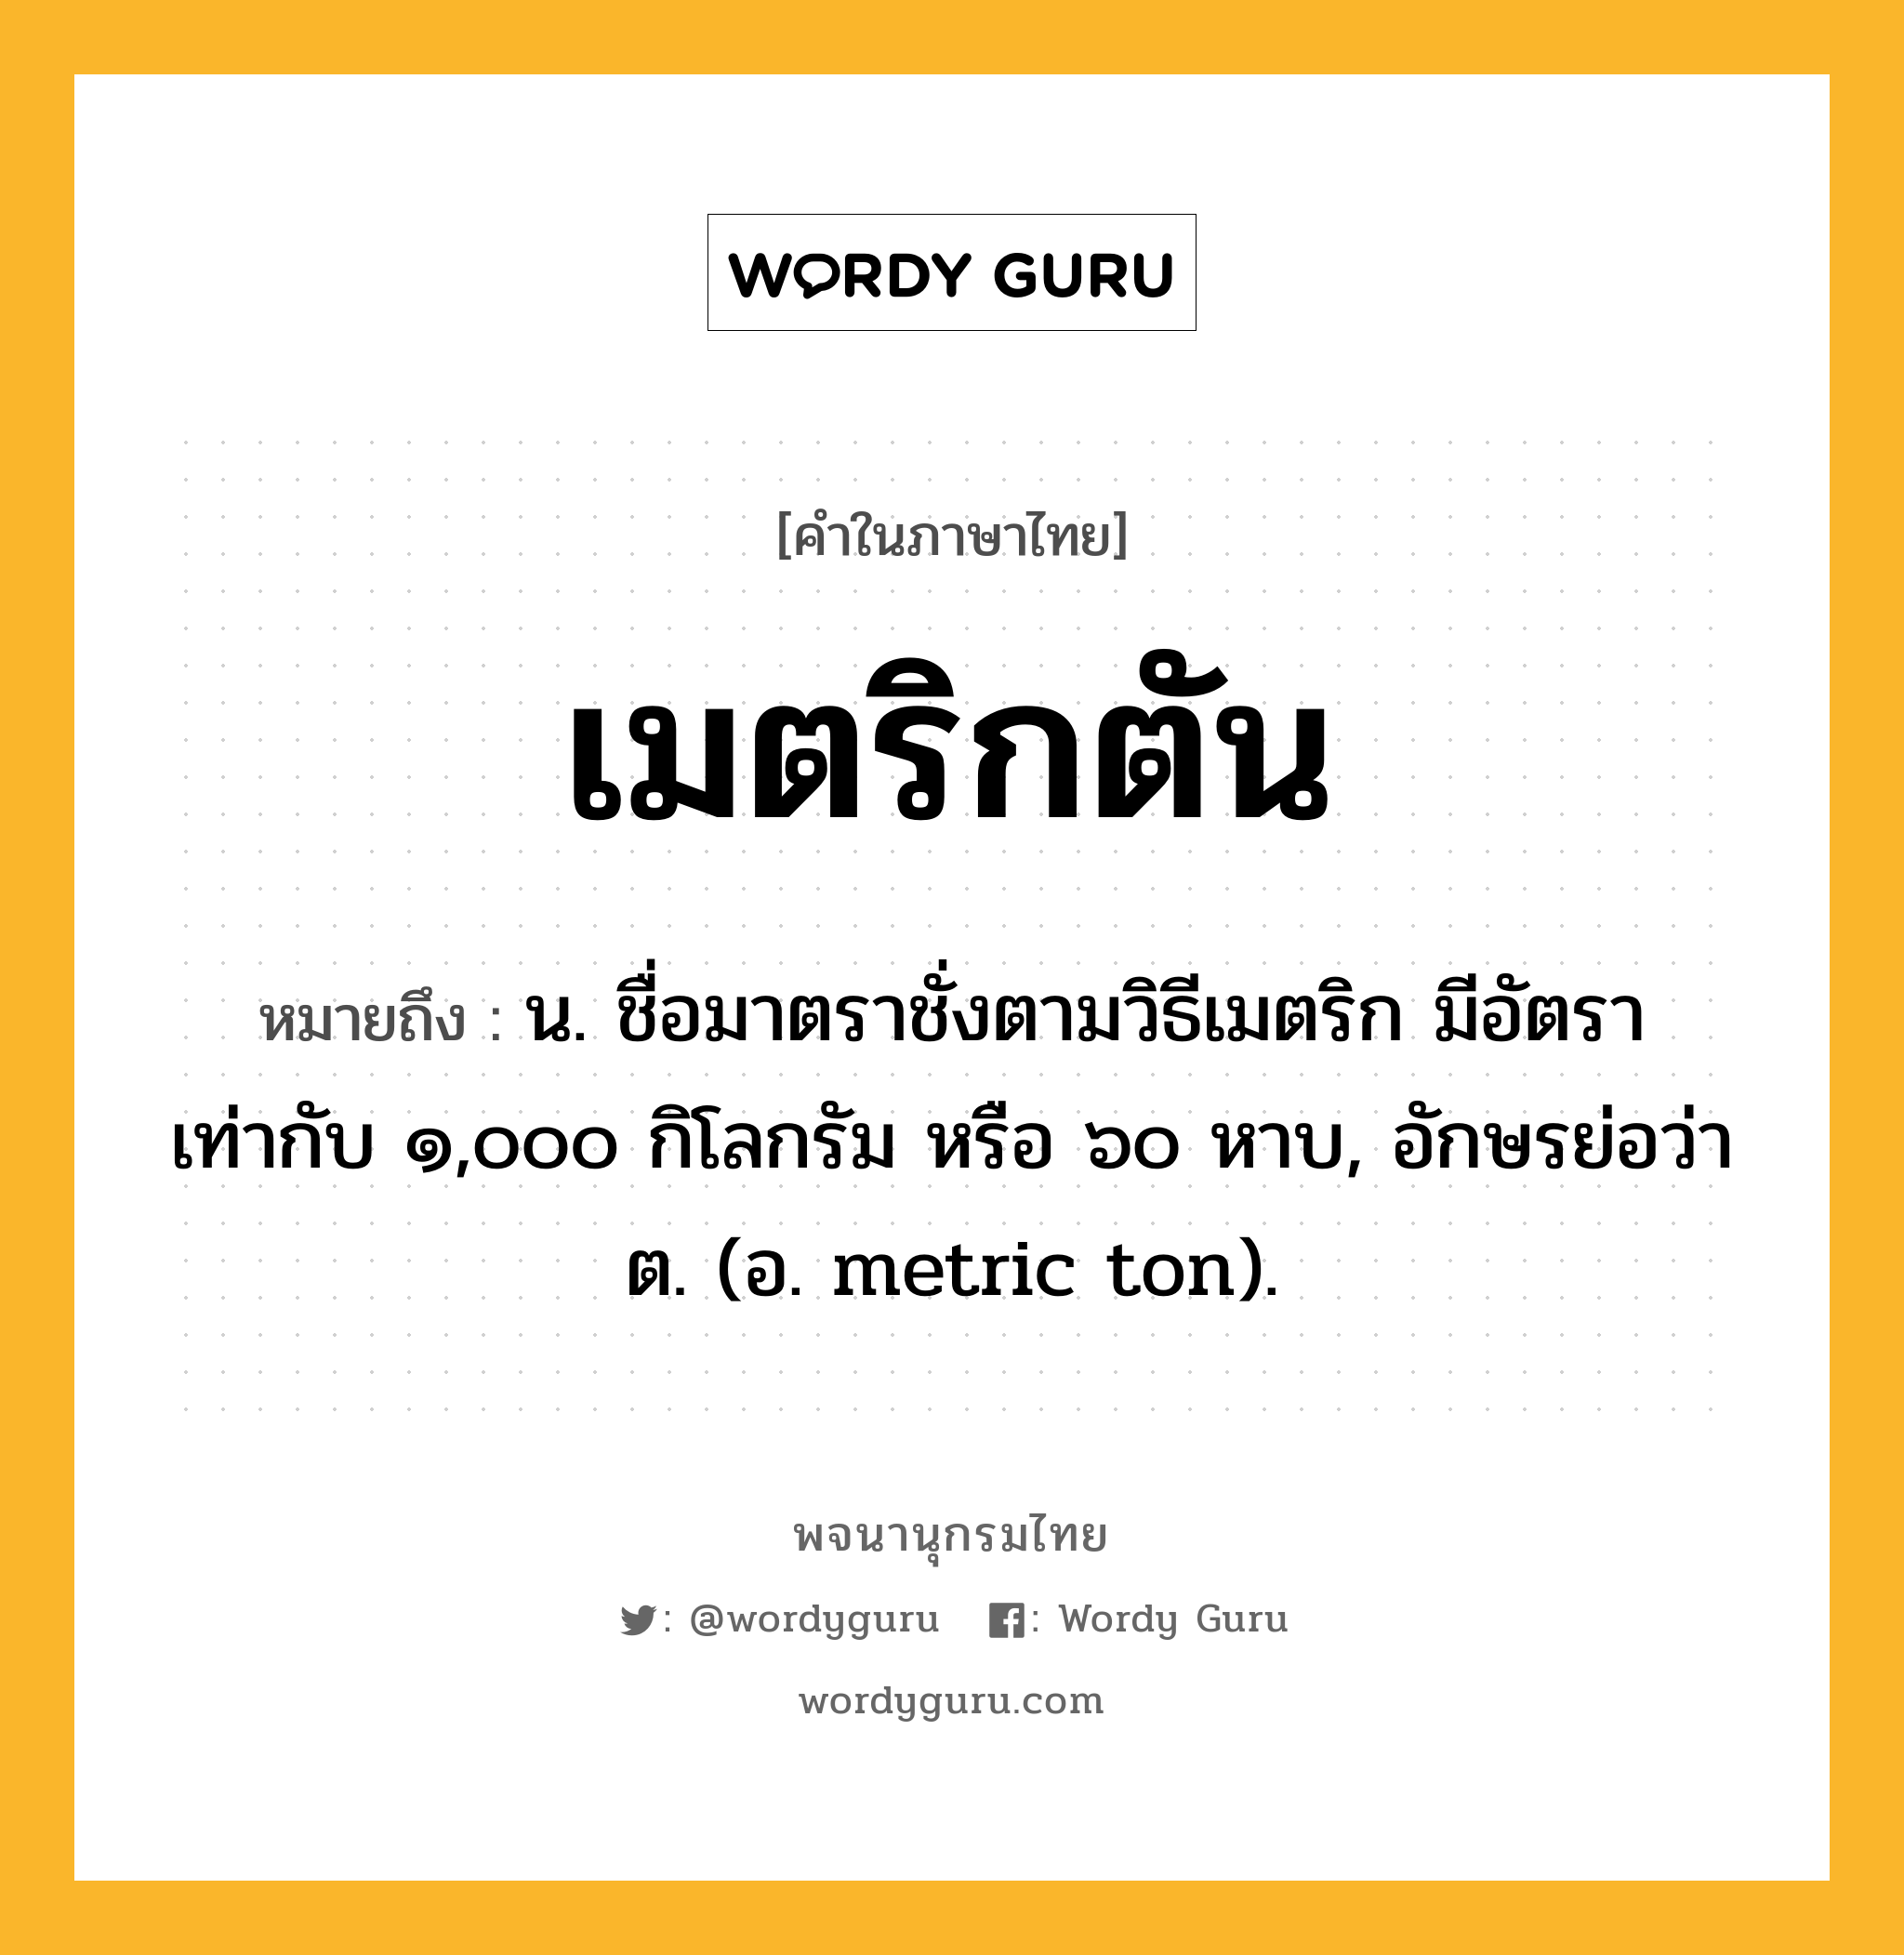 เมตริกตัน ความหมาย หมายถึงอะไร?, คำในภาษาไทย เมตริกตัน หมายถึง น. ชื่อมาตราชั่งตามวิธีเมตริก มีอัตราเท่ากับ ๑,๐๐๐ กิโลกรัม หรือ ๖๐ หาบ, อักษรย่อว่า ต. (อ. metric ton).